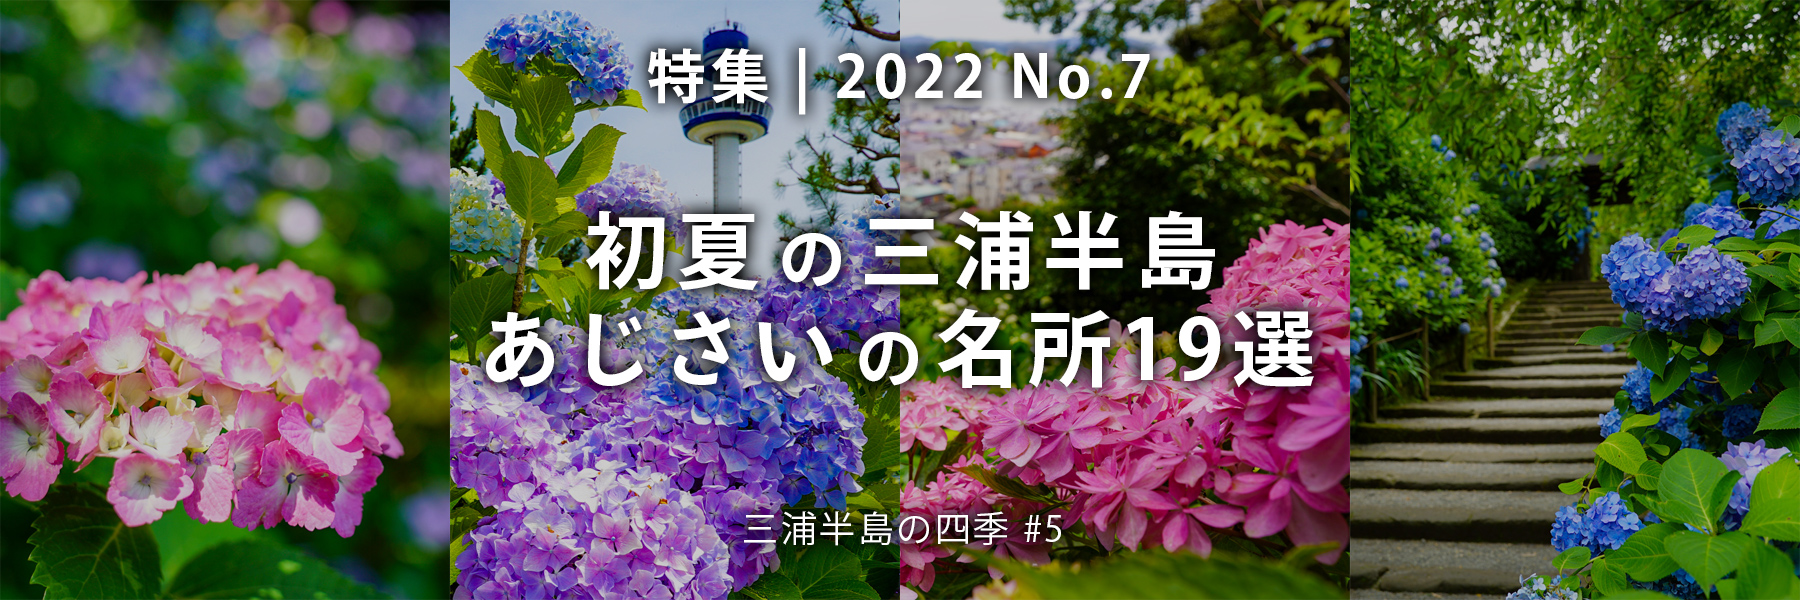 【2022 No.7】特集 | 初夏の三浦半島あじさいの名所18選